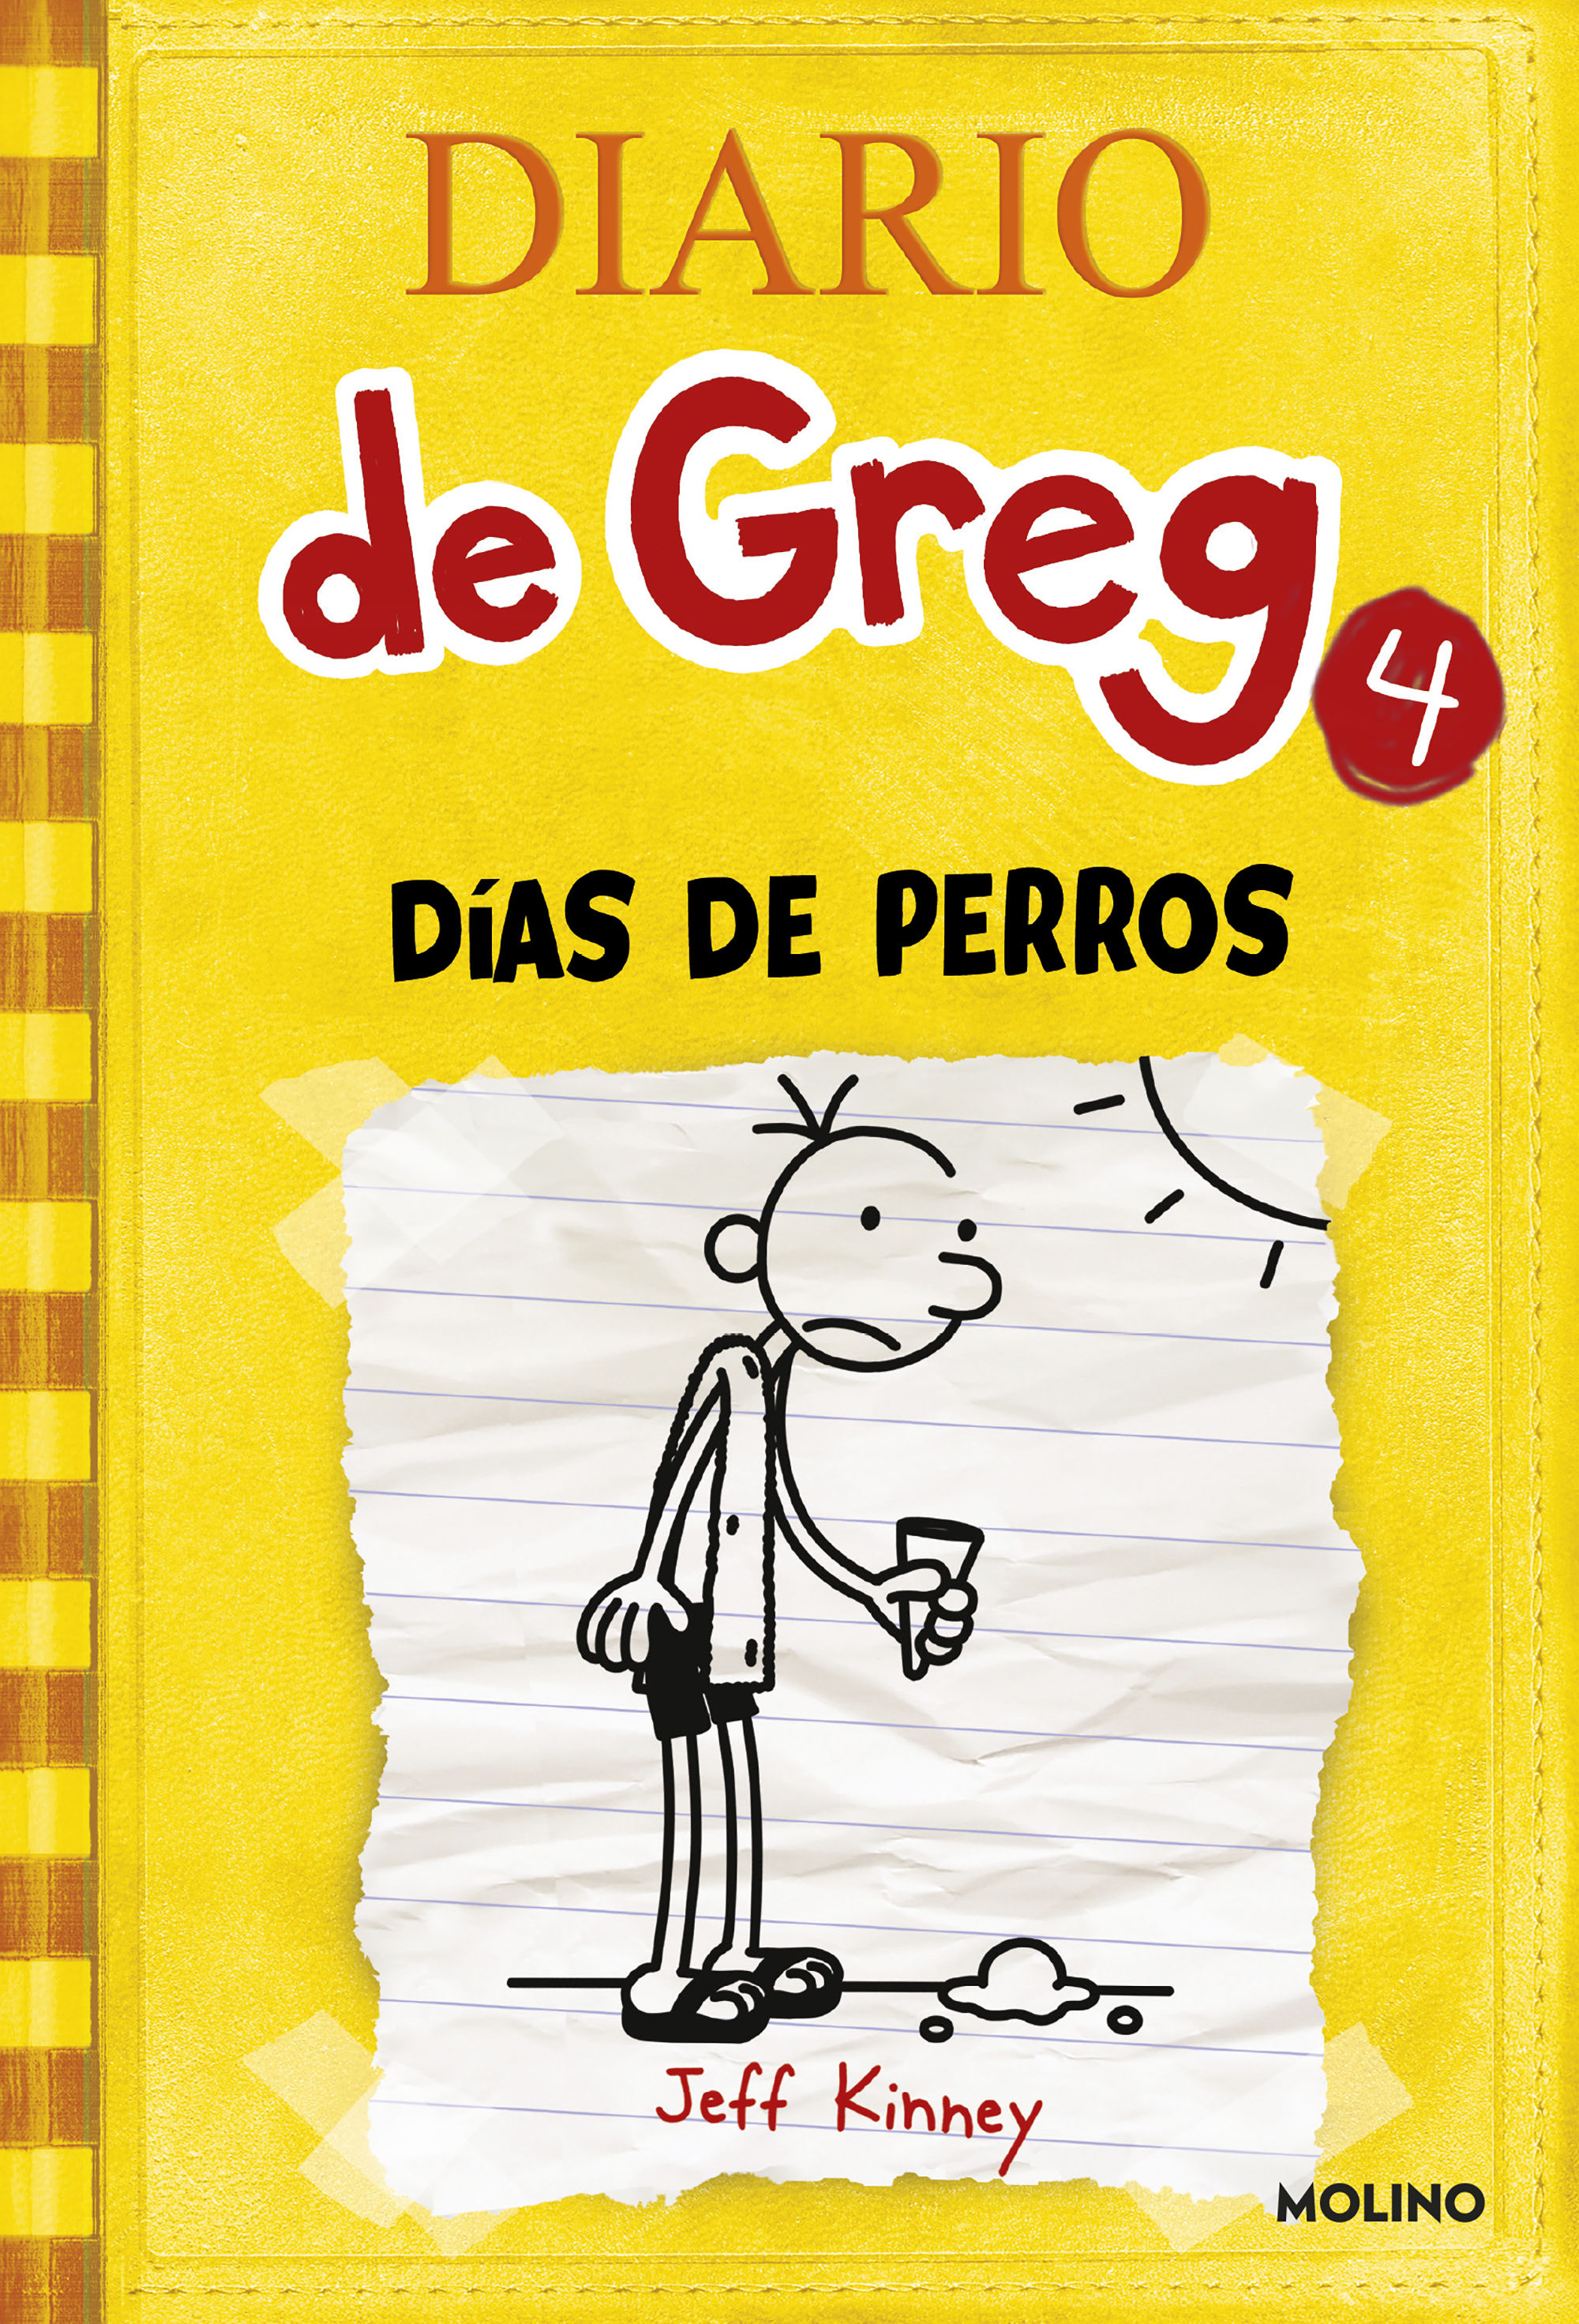 DIARIO DE GREG 4